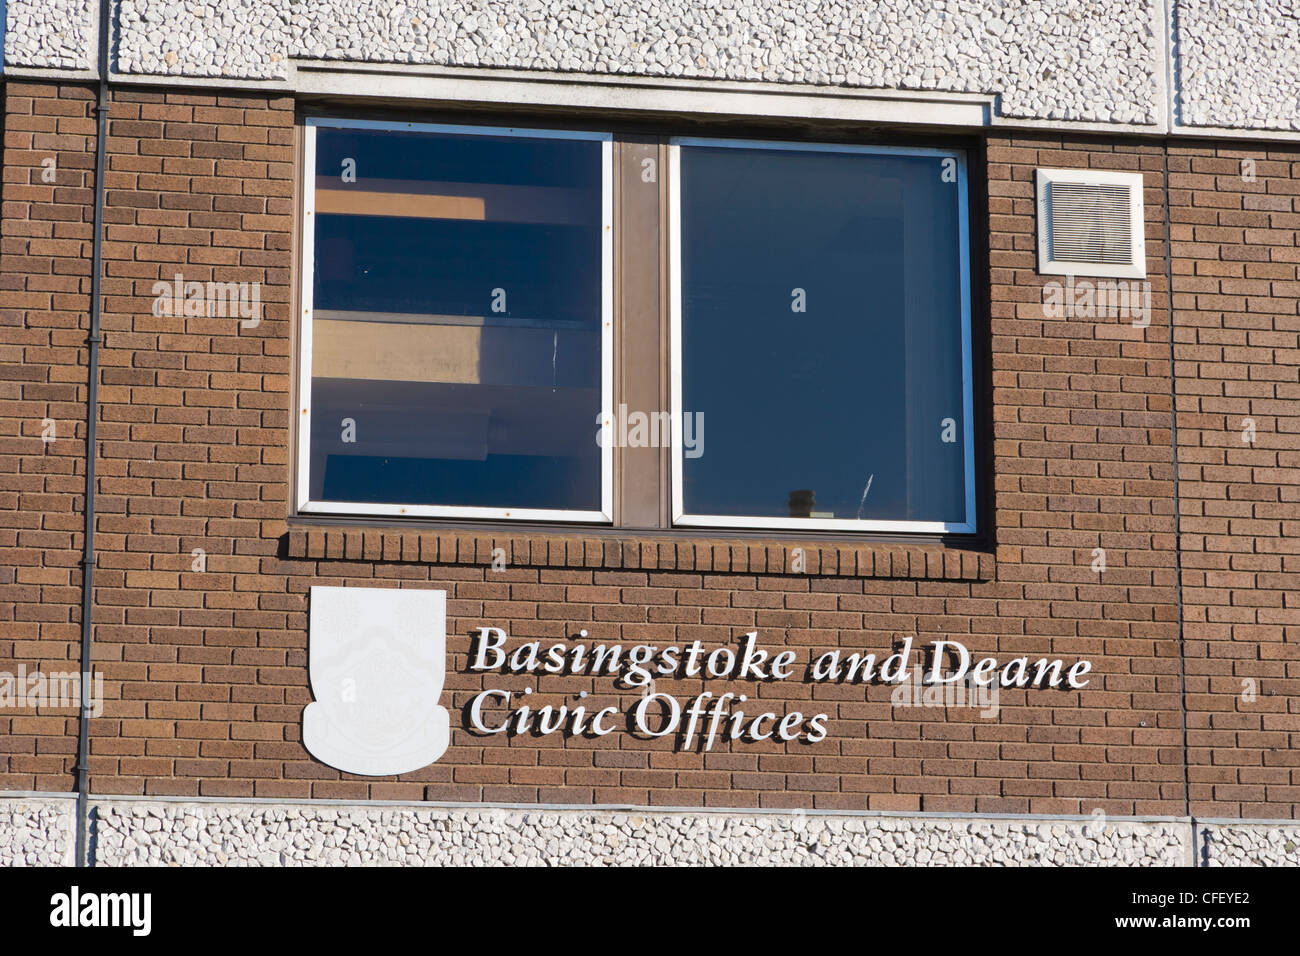 Basingstoke and Deane Civic Offices, Basingstoke, Hampshire, England, UK Stock Photo